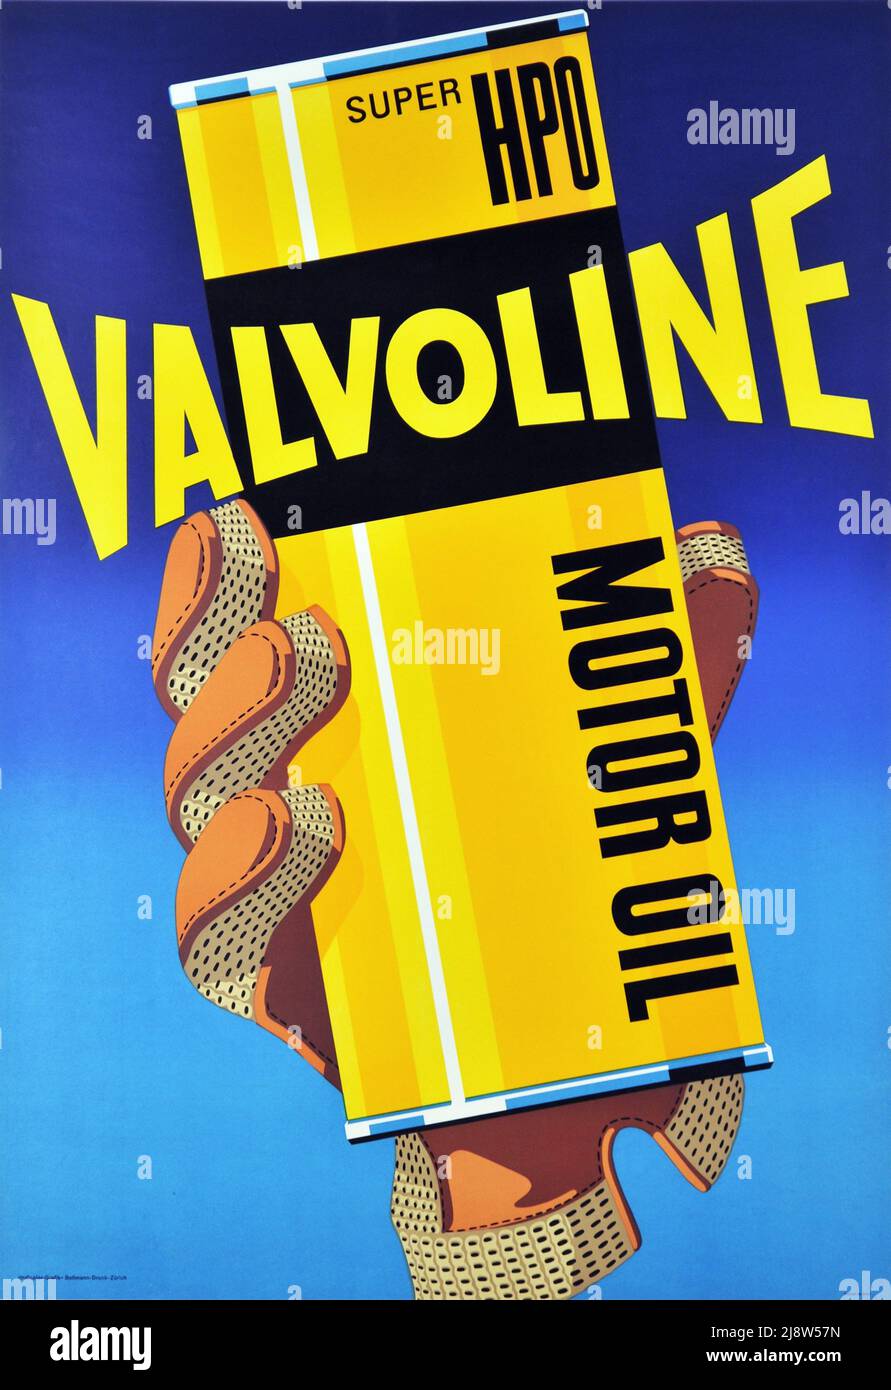 Vintage 1950s Advertising poster for - Valvoline Motor Oil Stock Photo